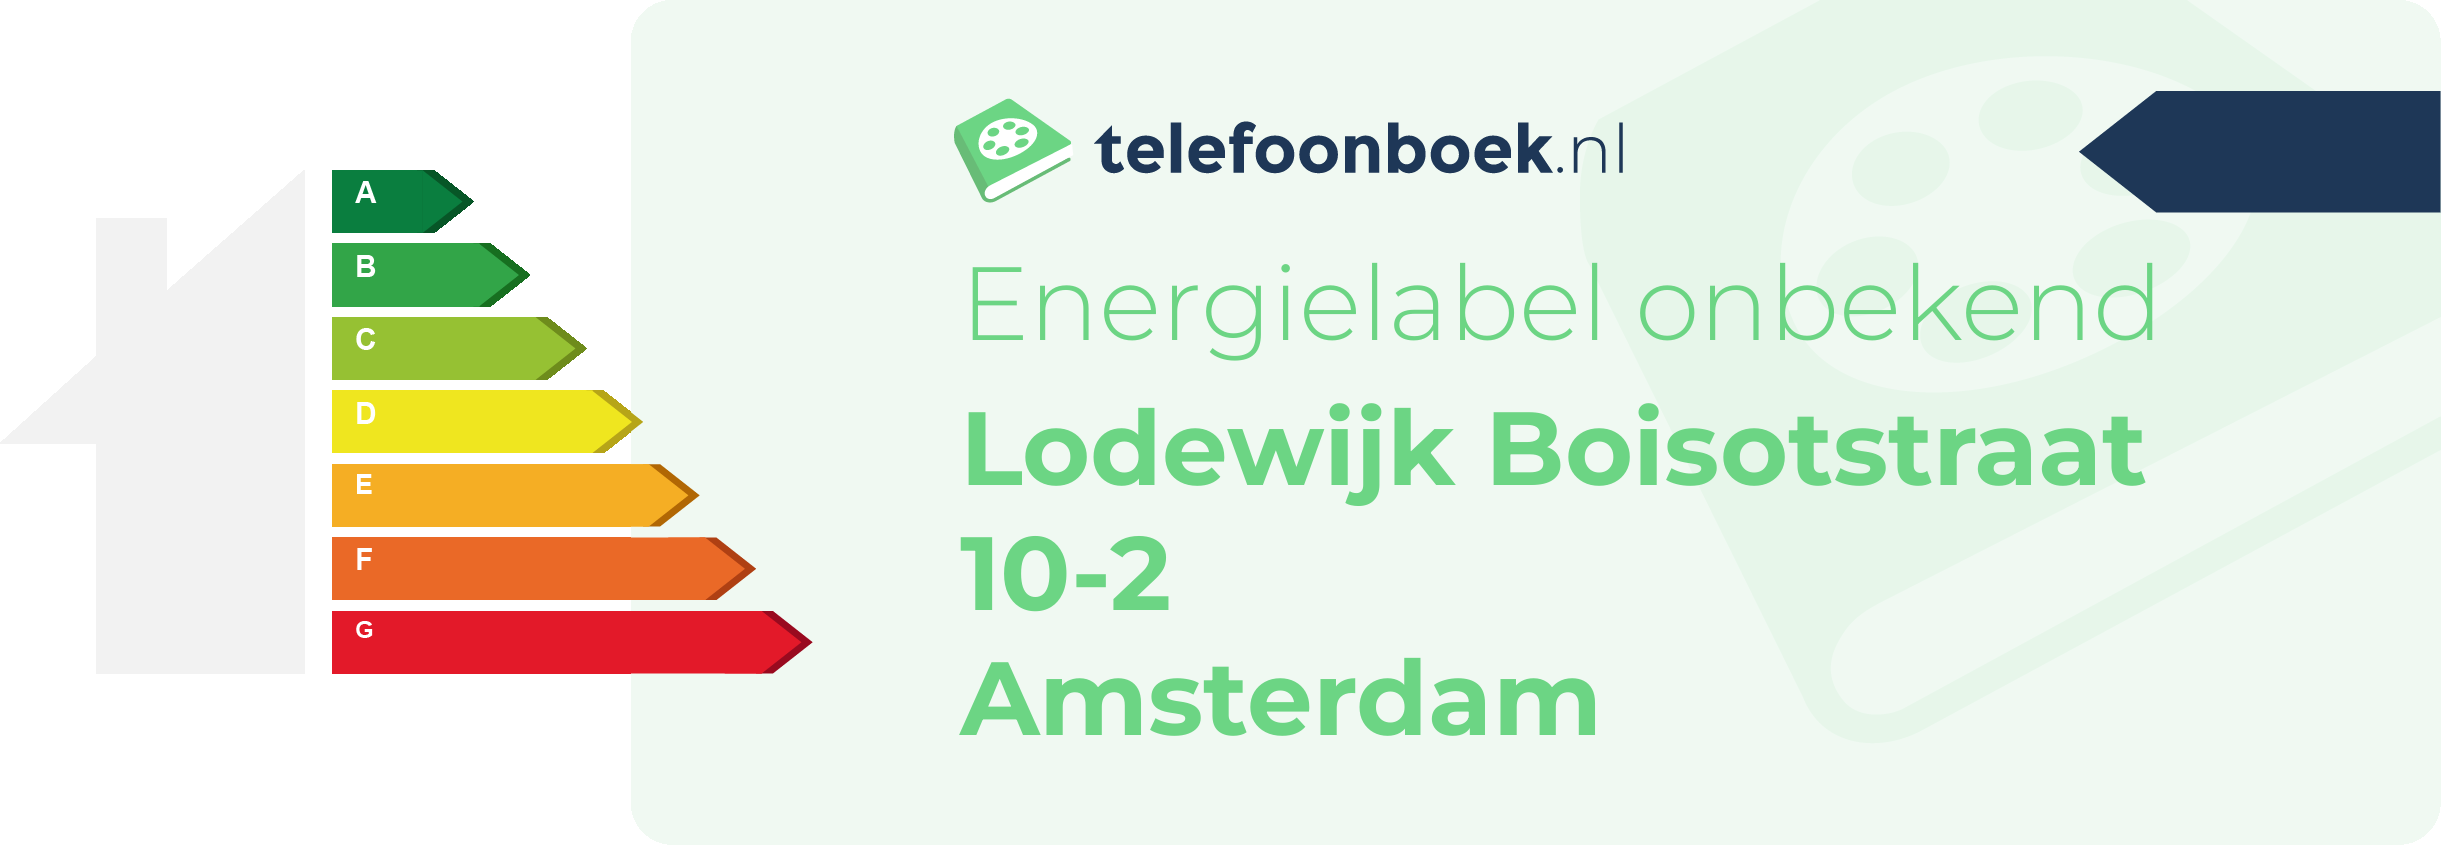 Energielabel Lodewijk Boisotstraat 10-2 Amsterdam